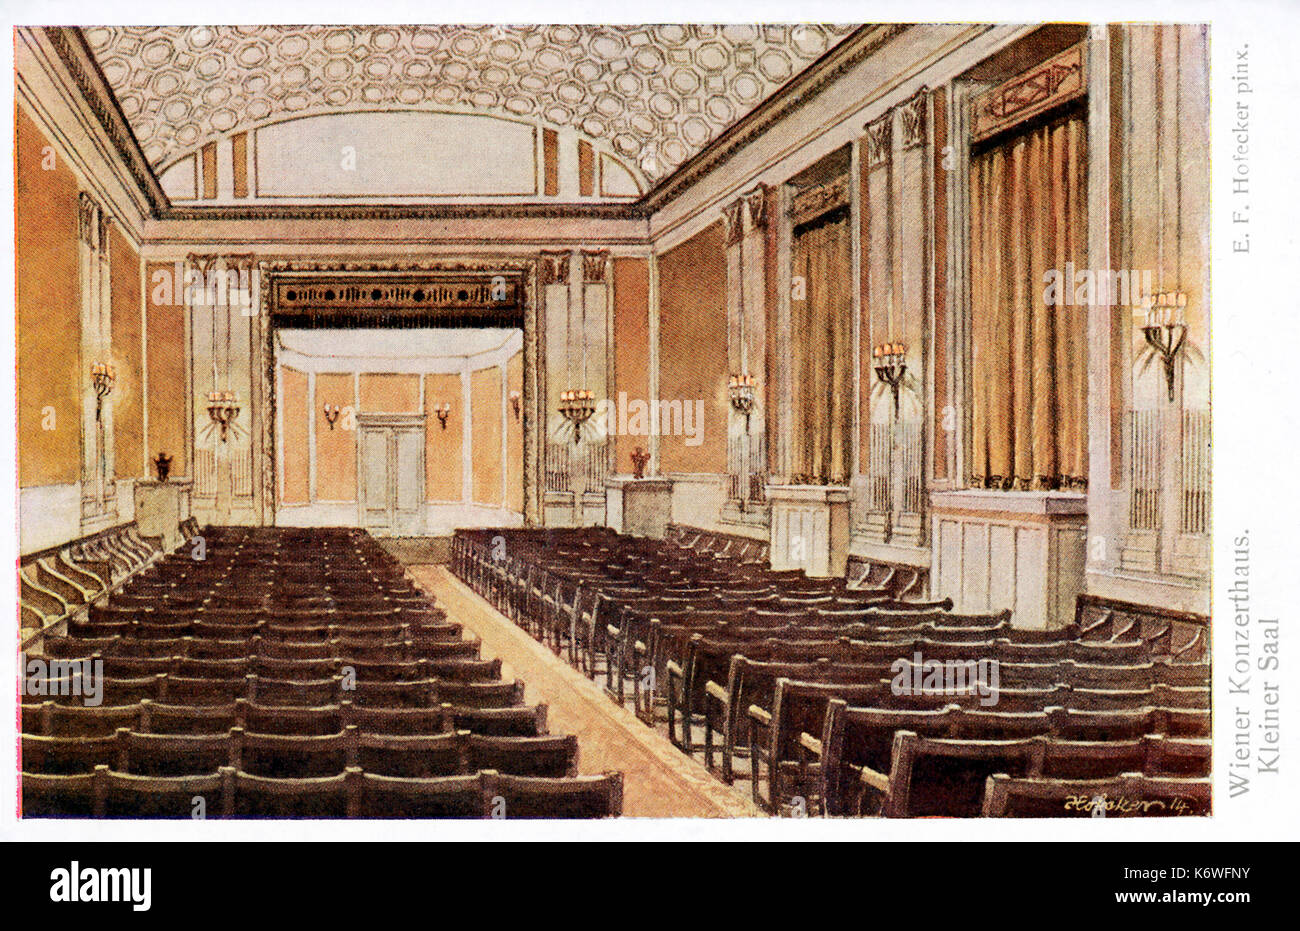 VIENNA - KONZERTHAUS - Interni - fine 19thC il Concert House (Konzerthaus) - piccola sala. La seconda sala di concerto principale di Vienna. Foto Stock